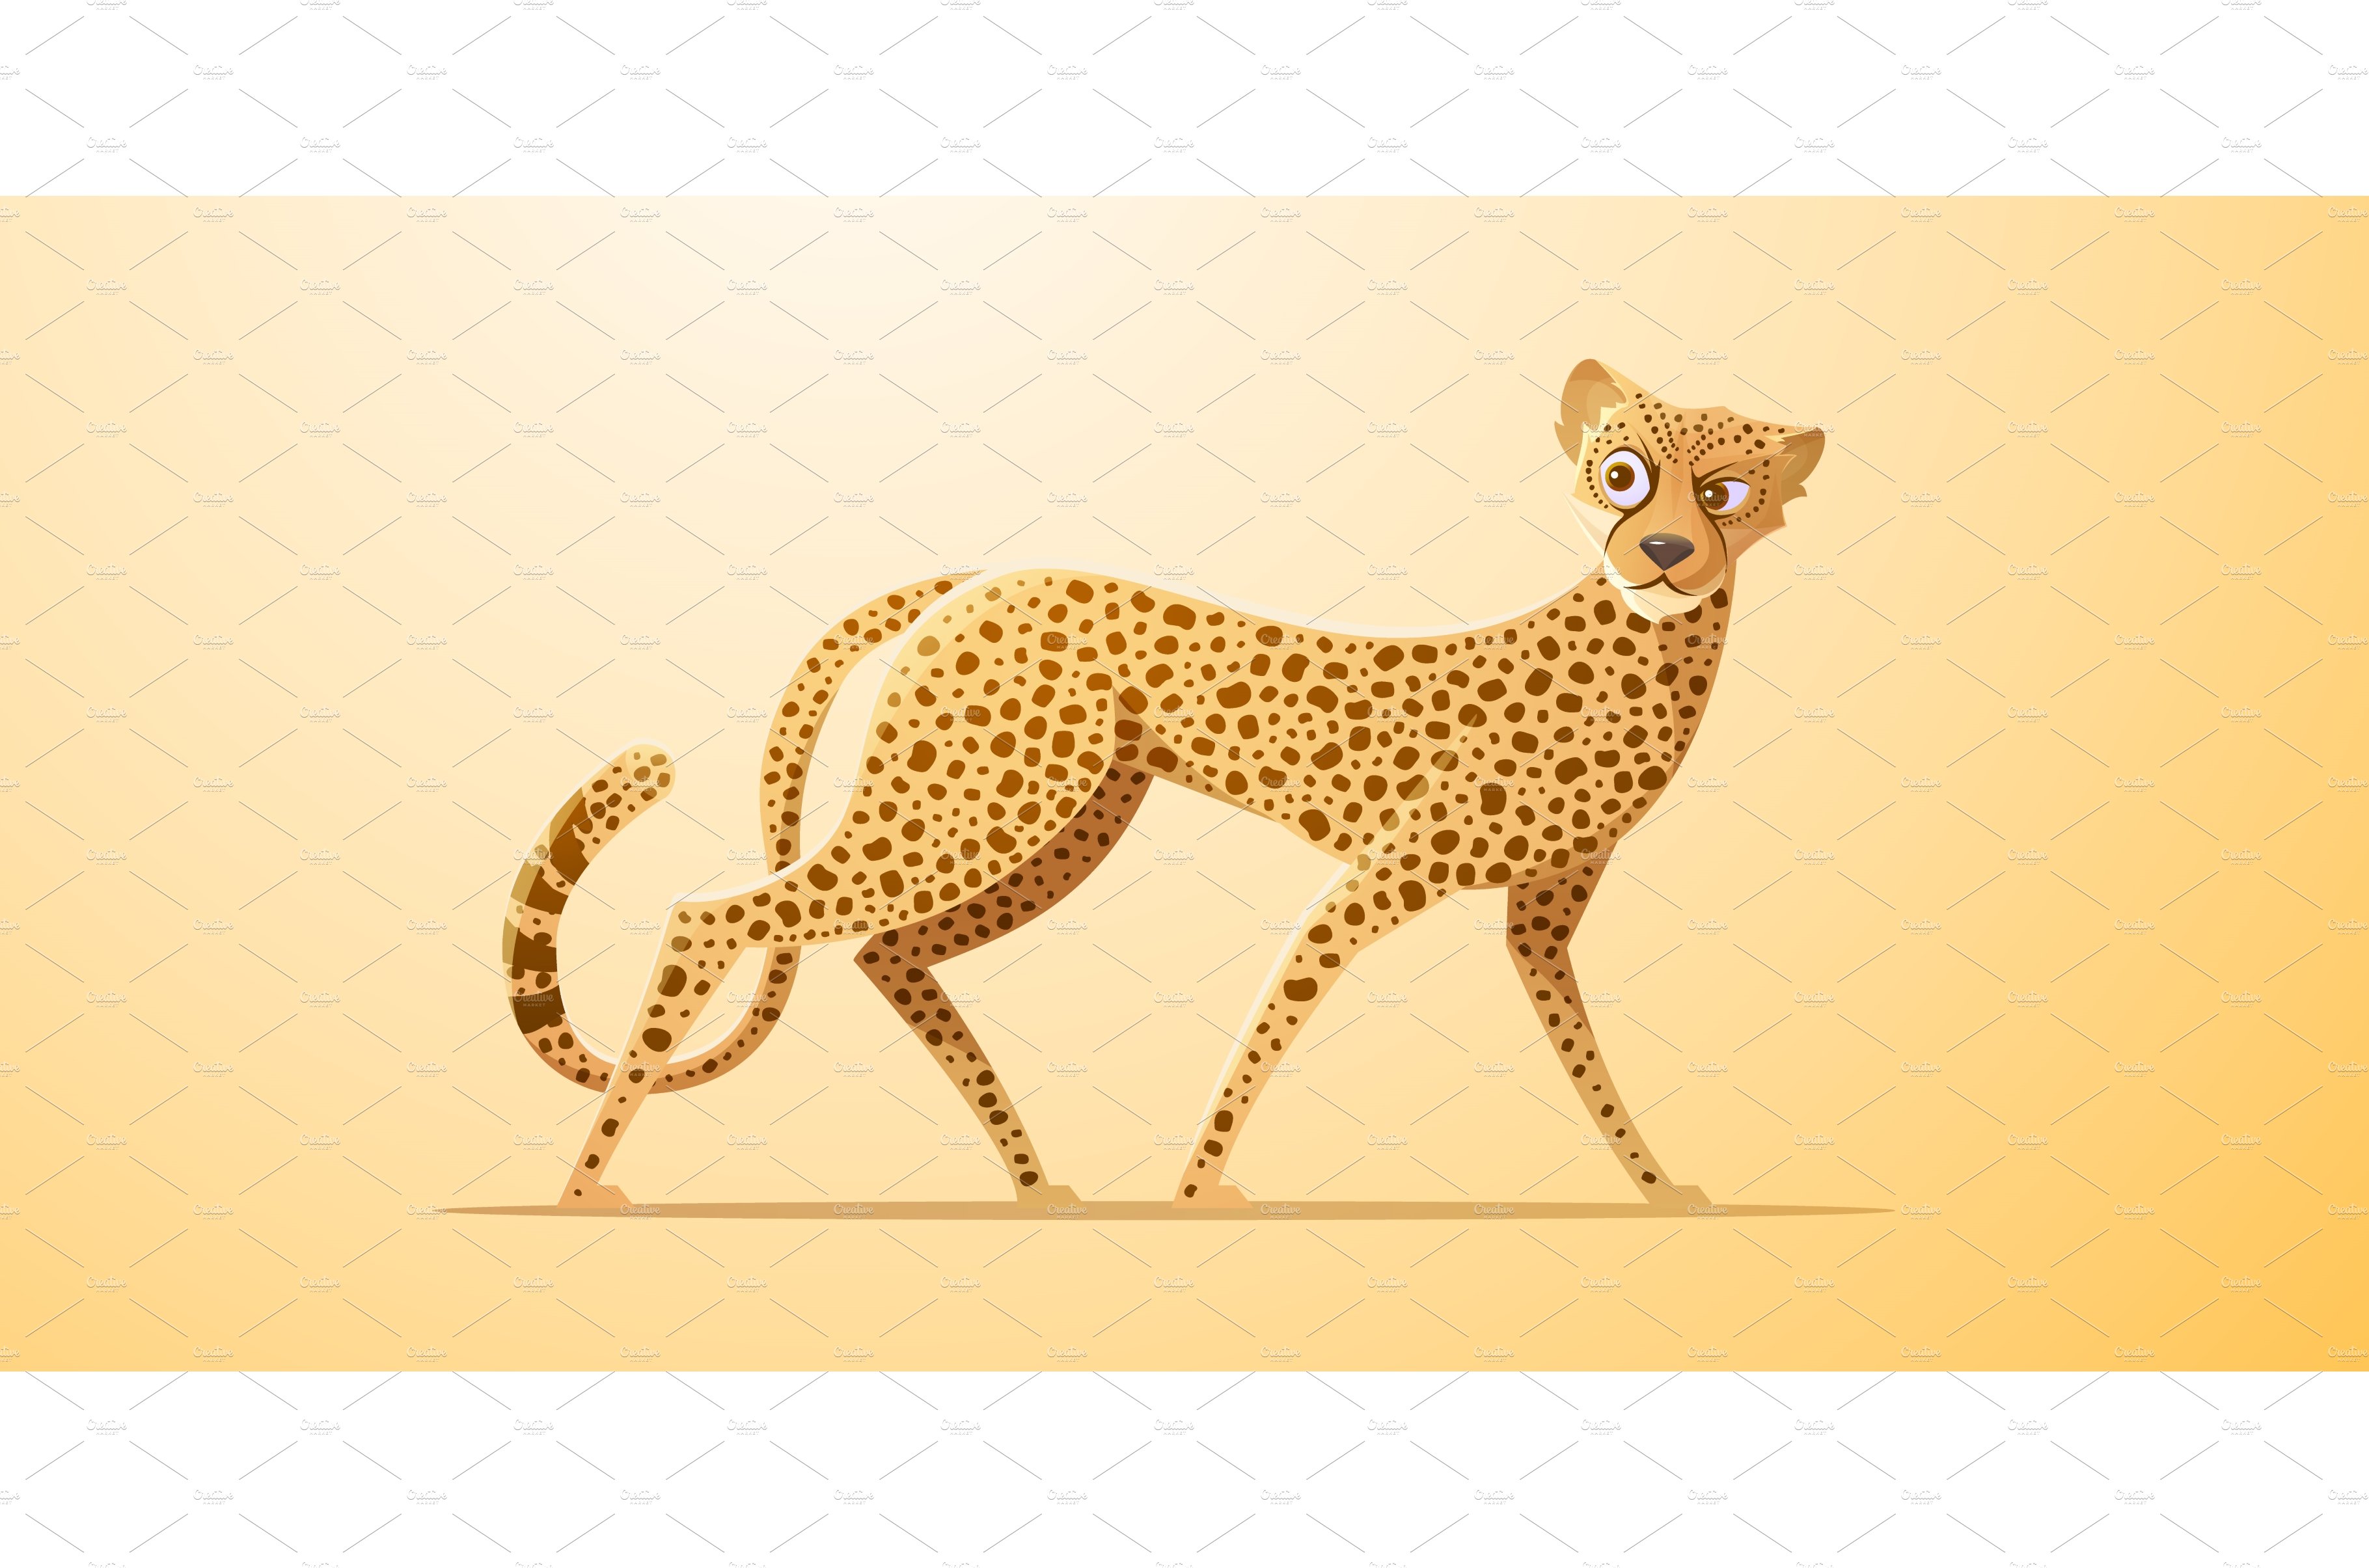 Cheetah, african gepard walking cover image.